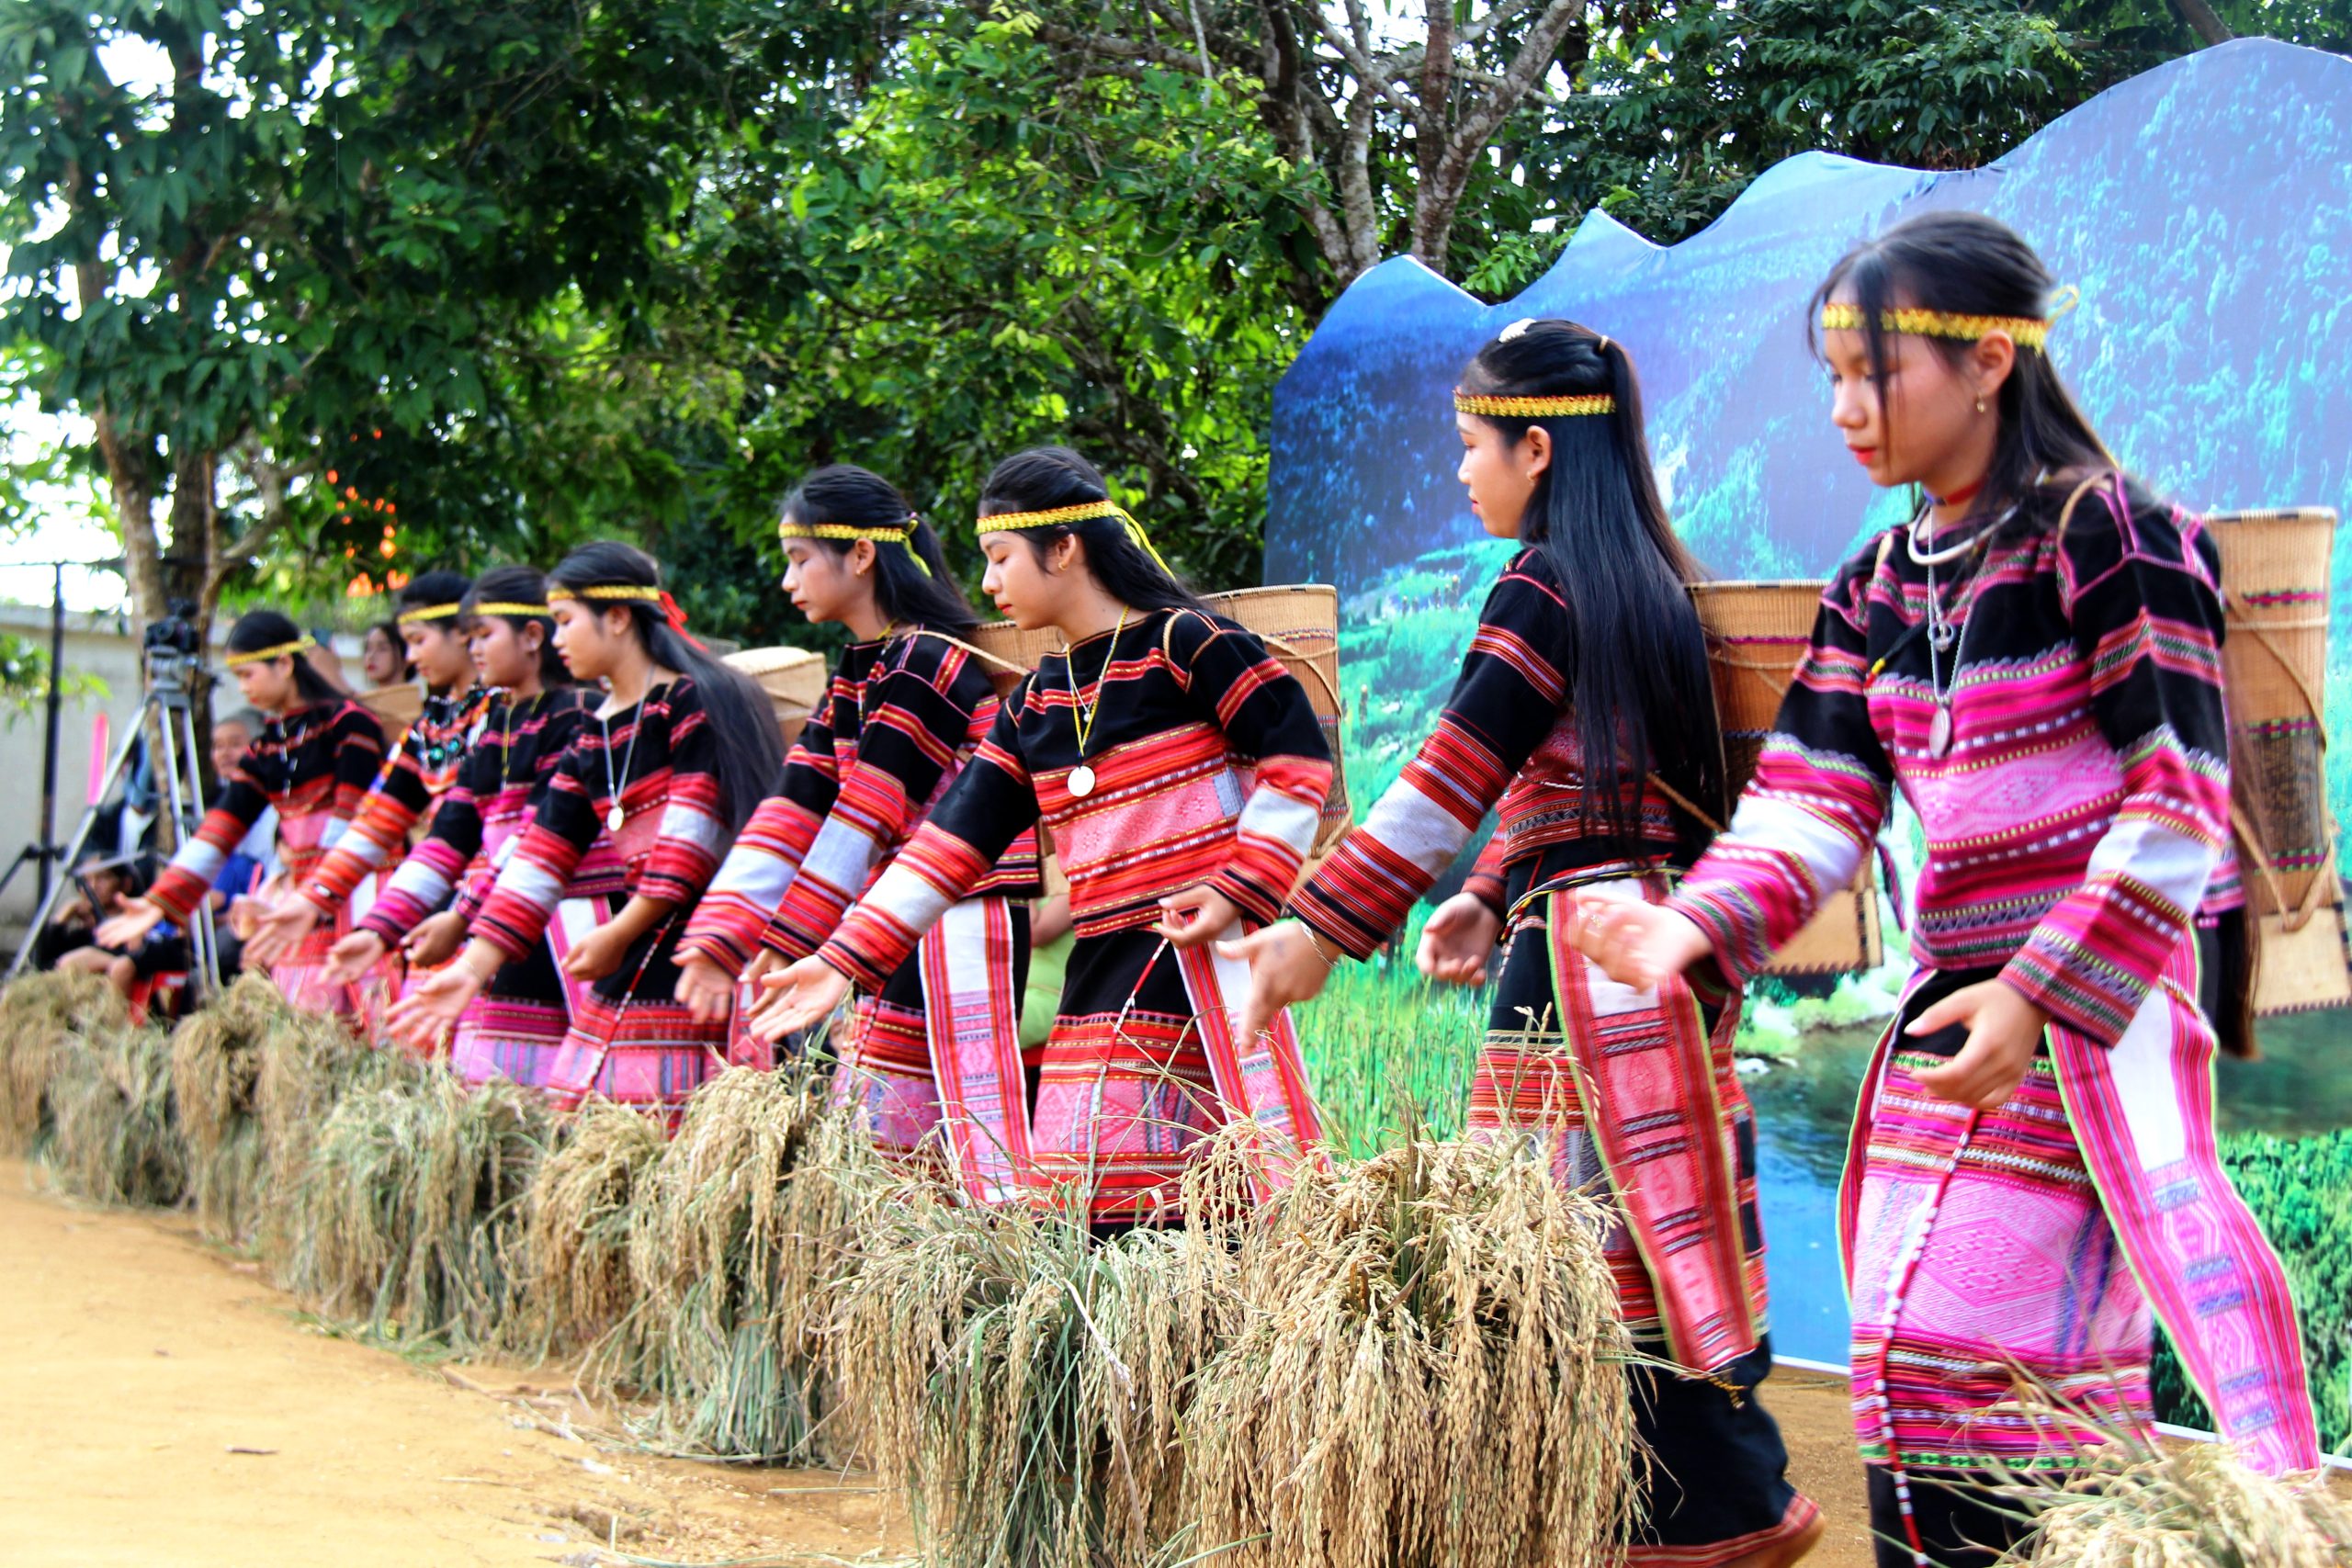 Thêm sức sống cho lễ hội ăn cốm lúa mới của người Bana Kriêm